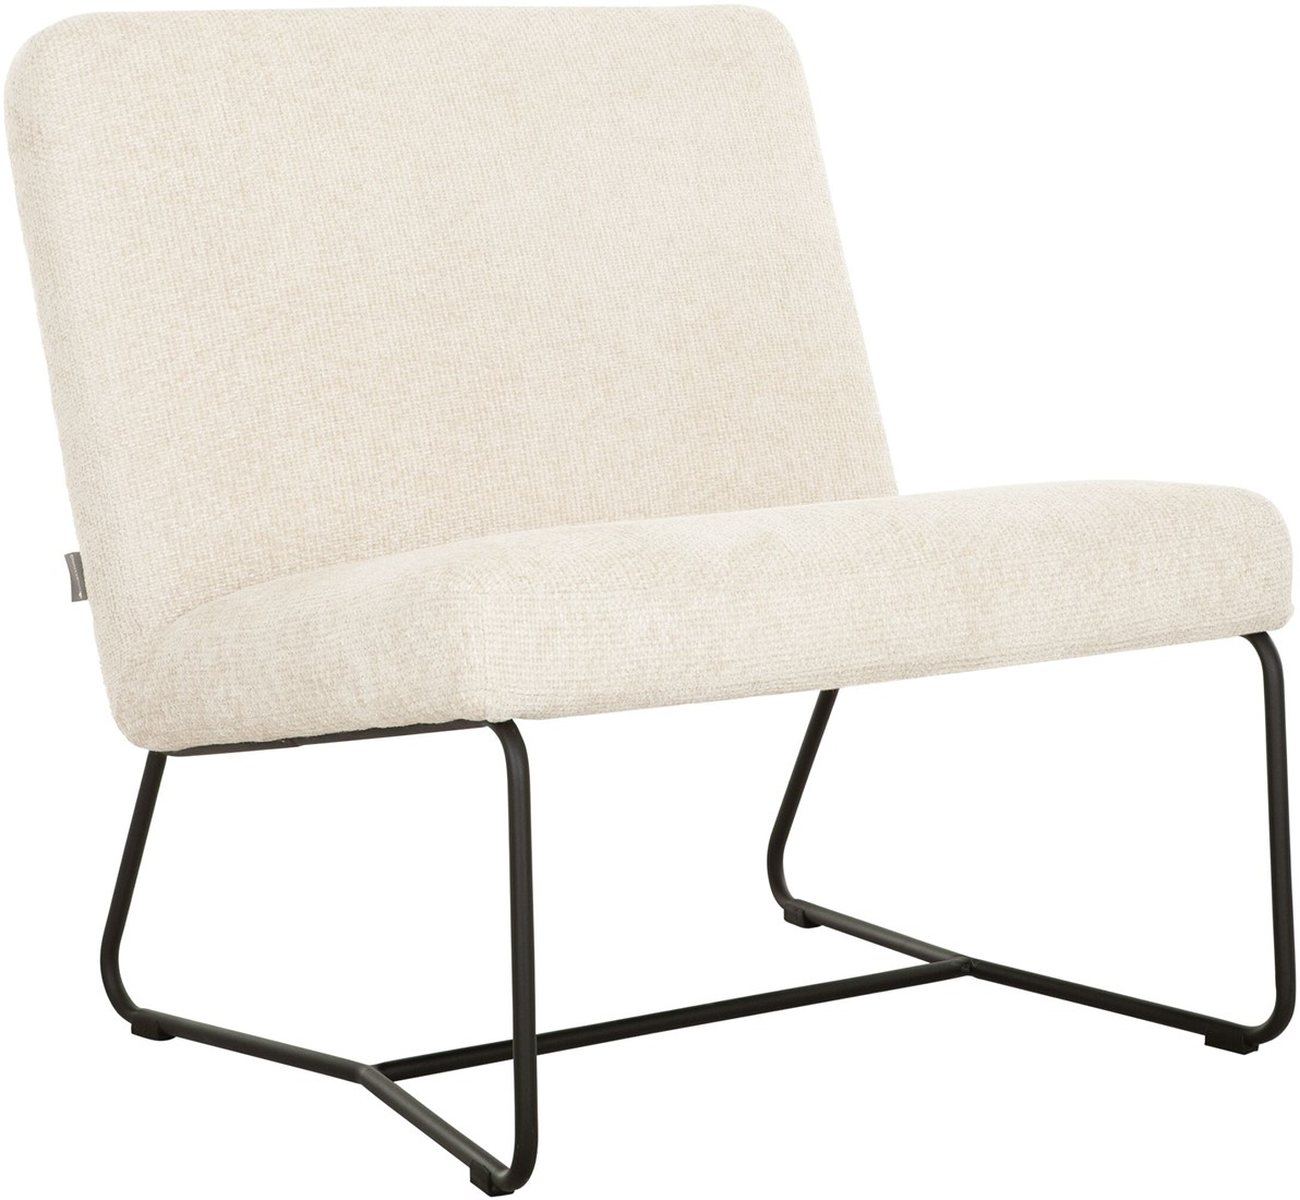 Der Sessel Zola überzeugt mit seinem modernen Design. Gefertigt wurde er aus Stoff, welcher einen natürlichen Farbton besitzt. Das Gestell ist aus Metall und hat eine schwarze Farbe. Der Sessel besitzt eine Größe von 80x78x80 cm.